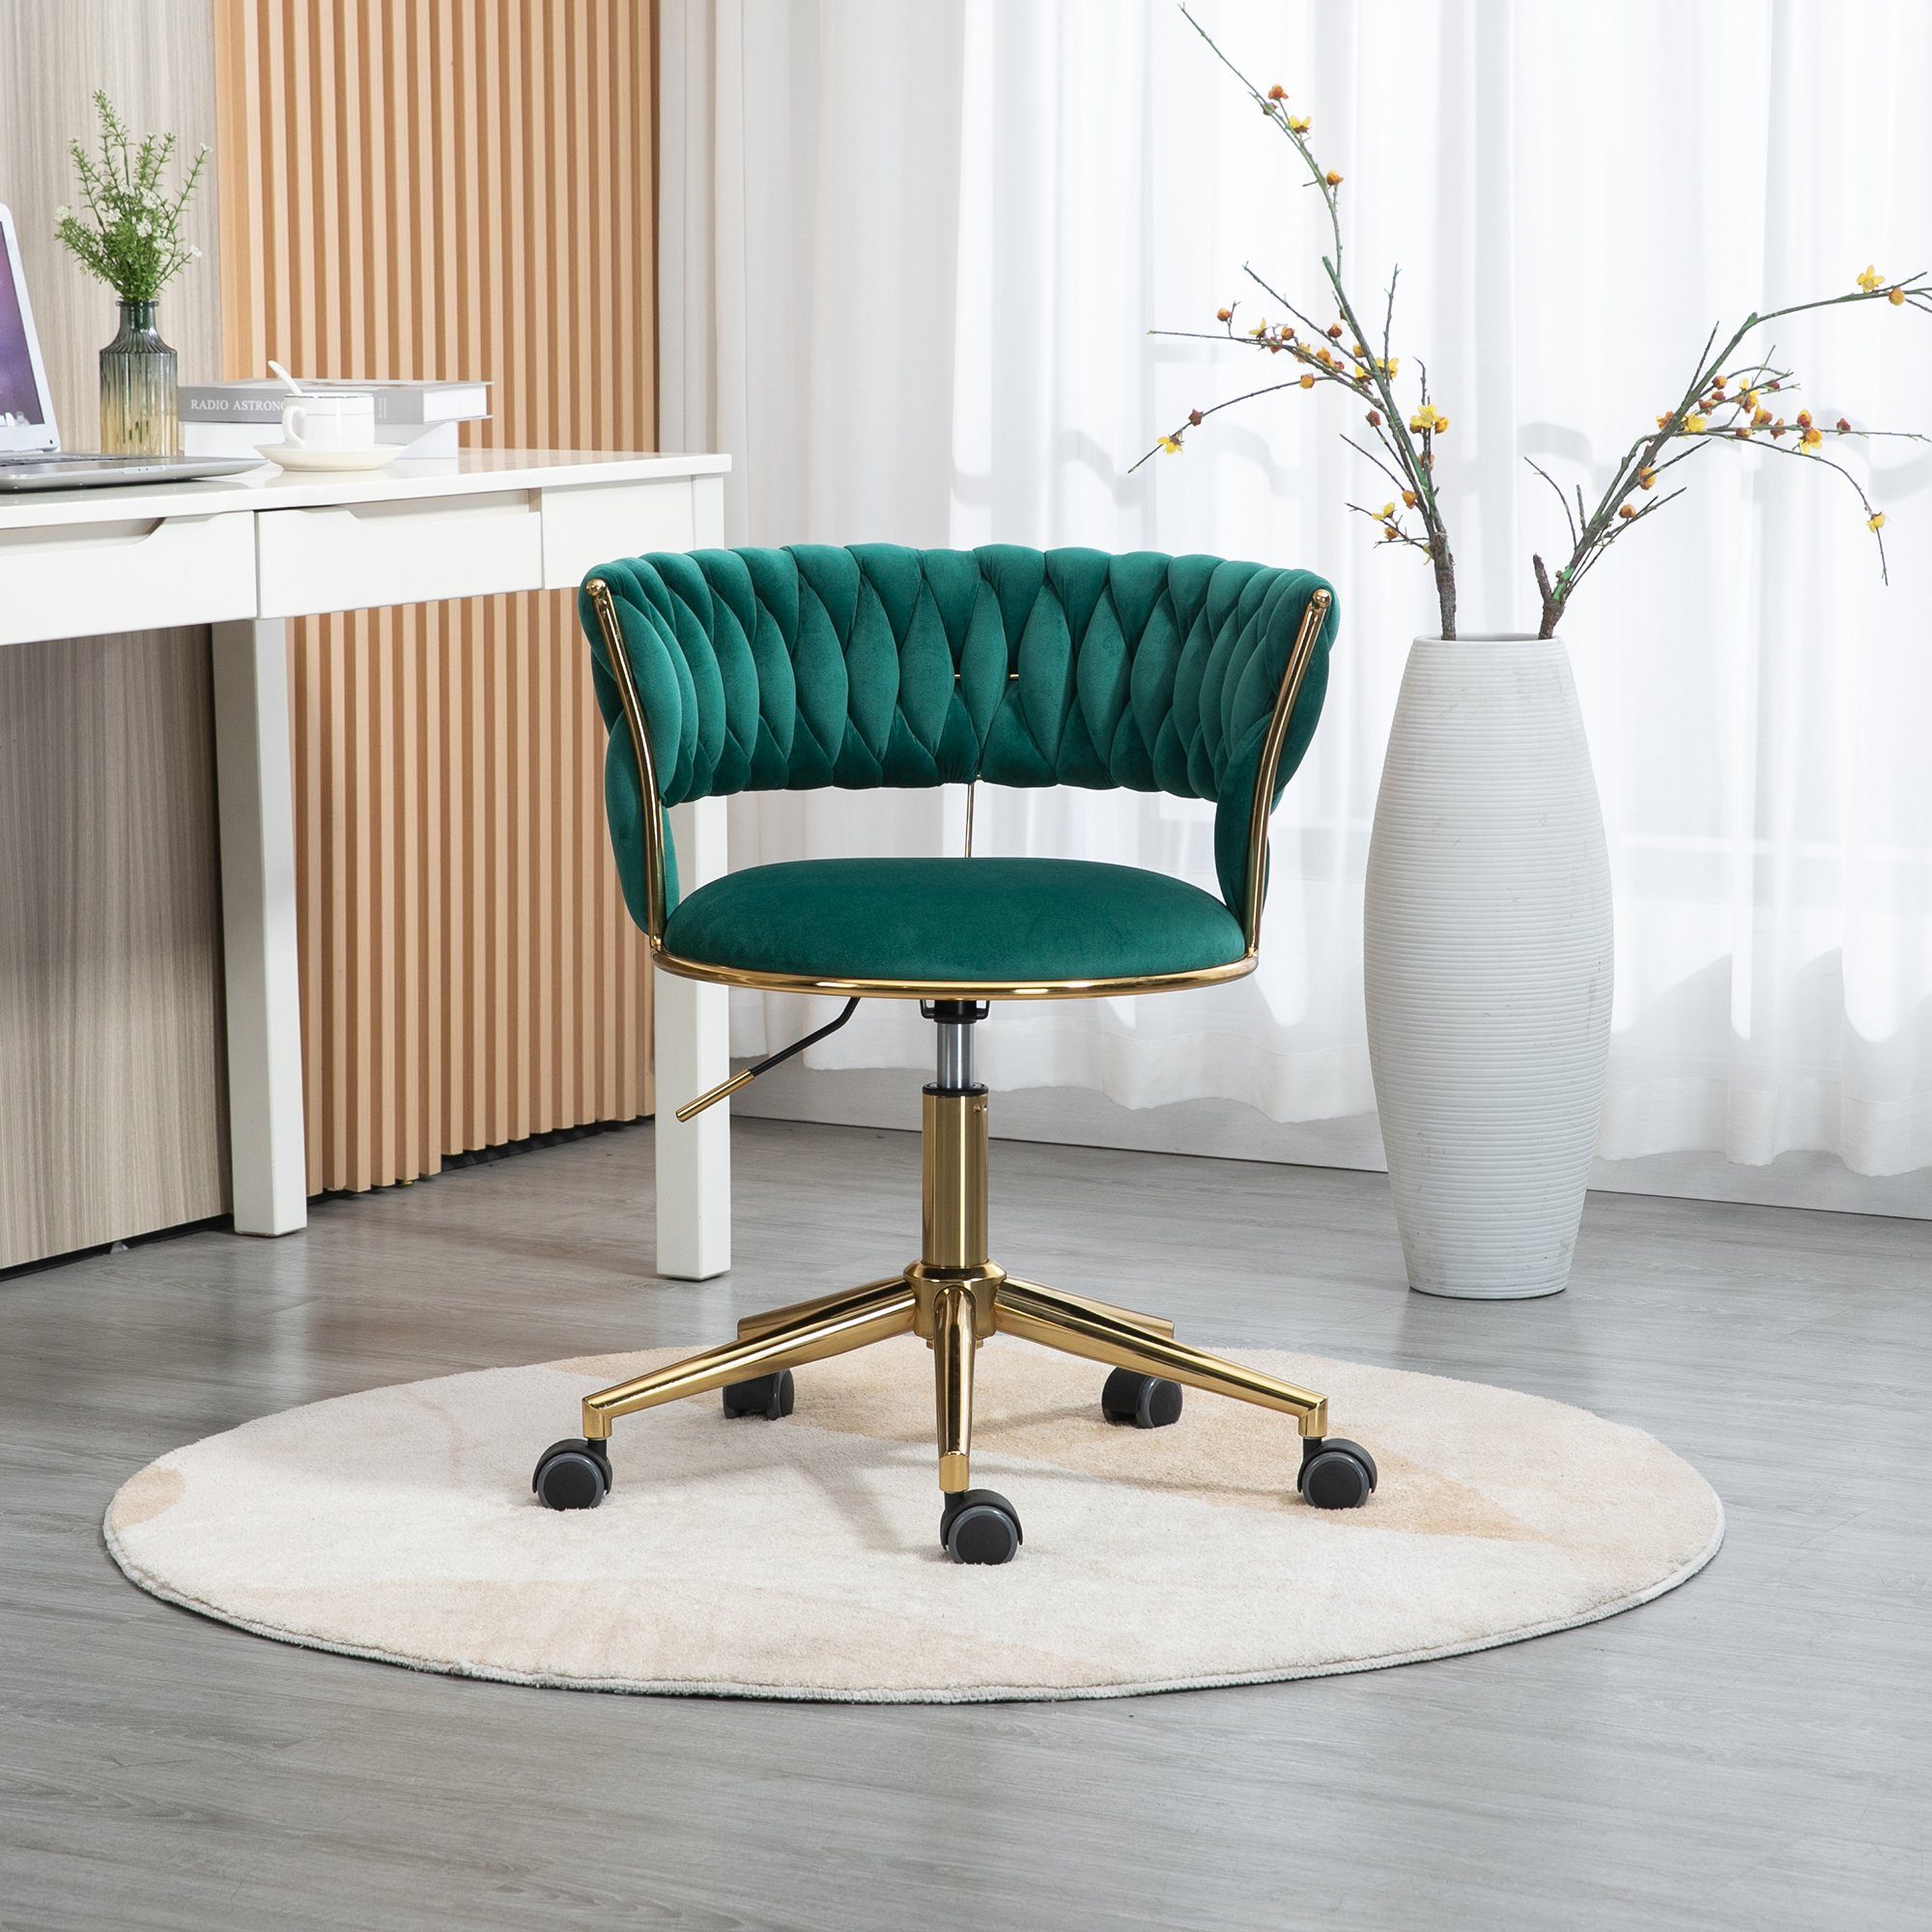 Odikalo Drehstuhl Bürostuhl Freizeit Make-up Samt goldene Beine 360° drehbar mehrfarbig Grün